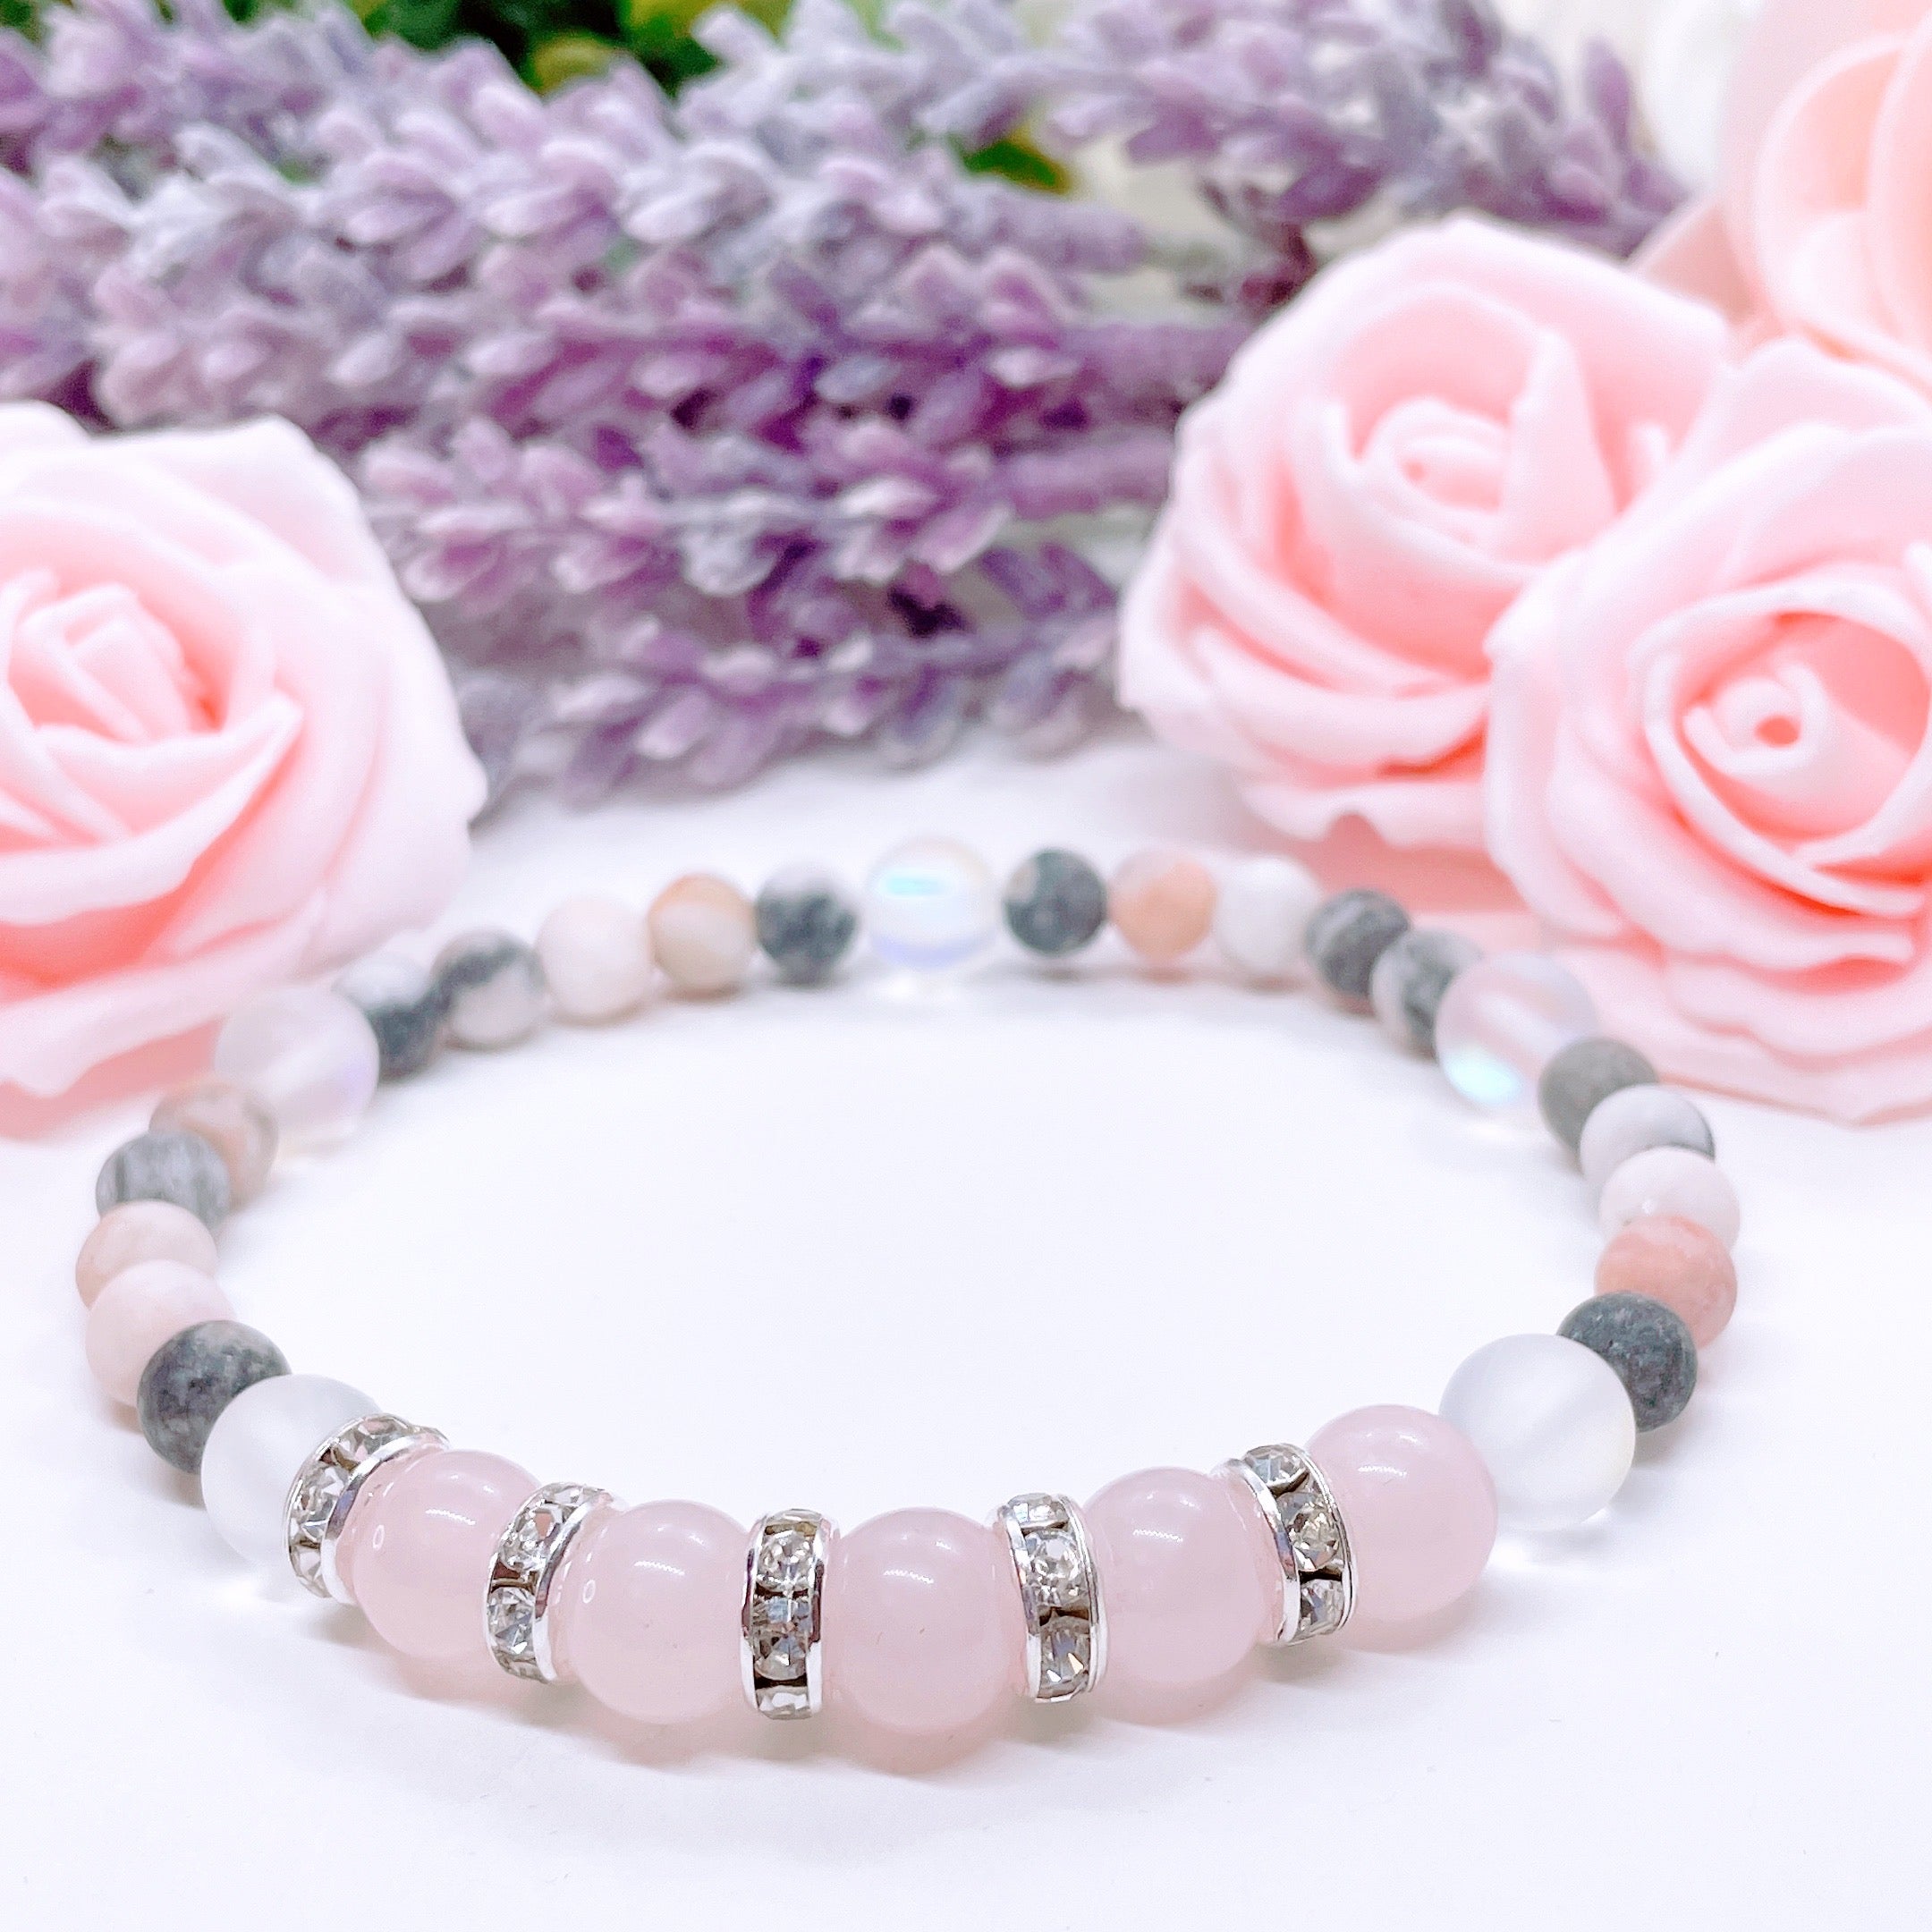 Rose Quartz Large Bead Gemstone Bracelet for Joy